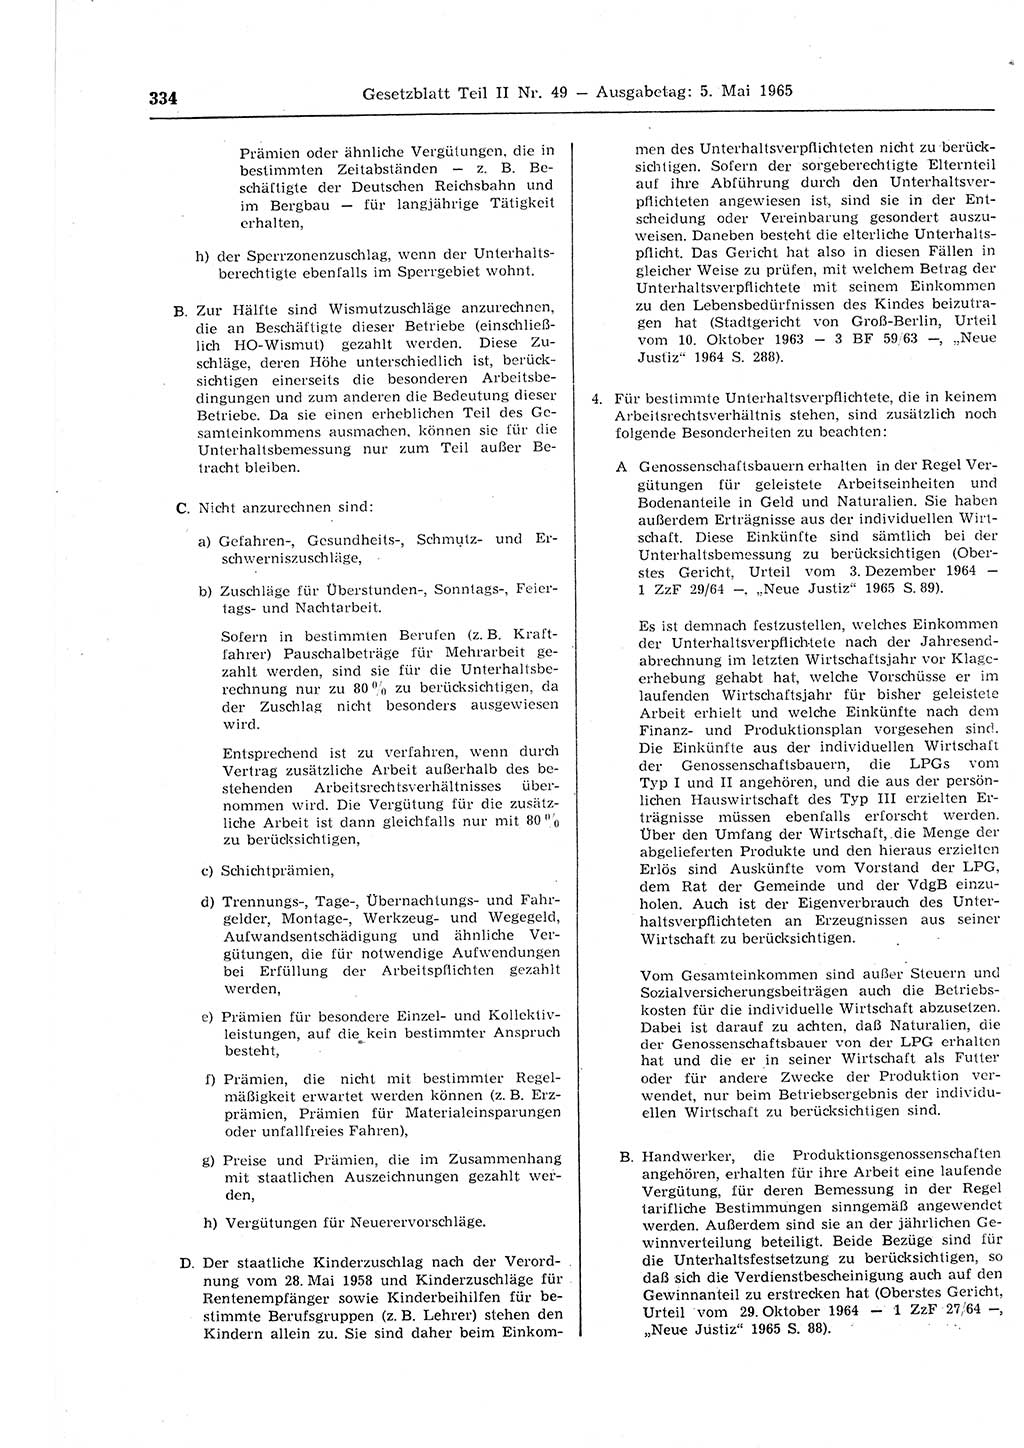 Gesetzblatt (GBl.) der Deutschen Demokratischen Republik (DDR) Teil ⅠⅠ 1965, Seite 334 (GBl. DDR ⅠⅠ 1965, S. 334)